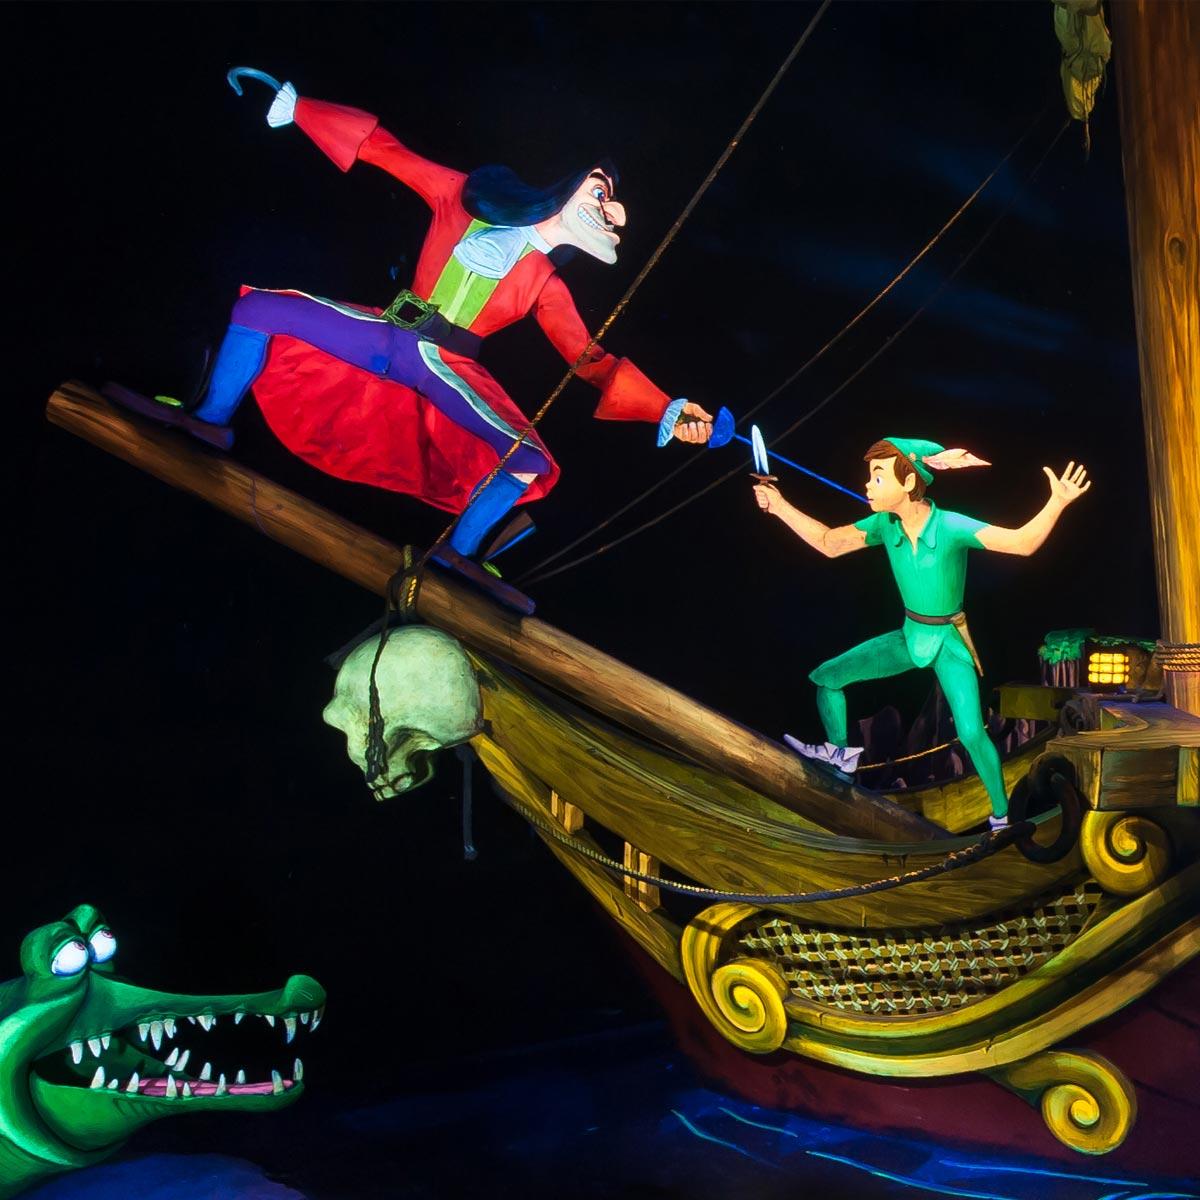 Peter Pan's Flight: Peter Pan Attraction